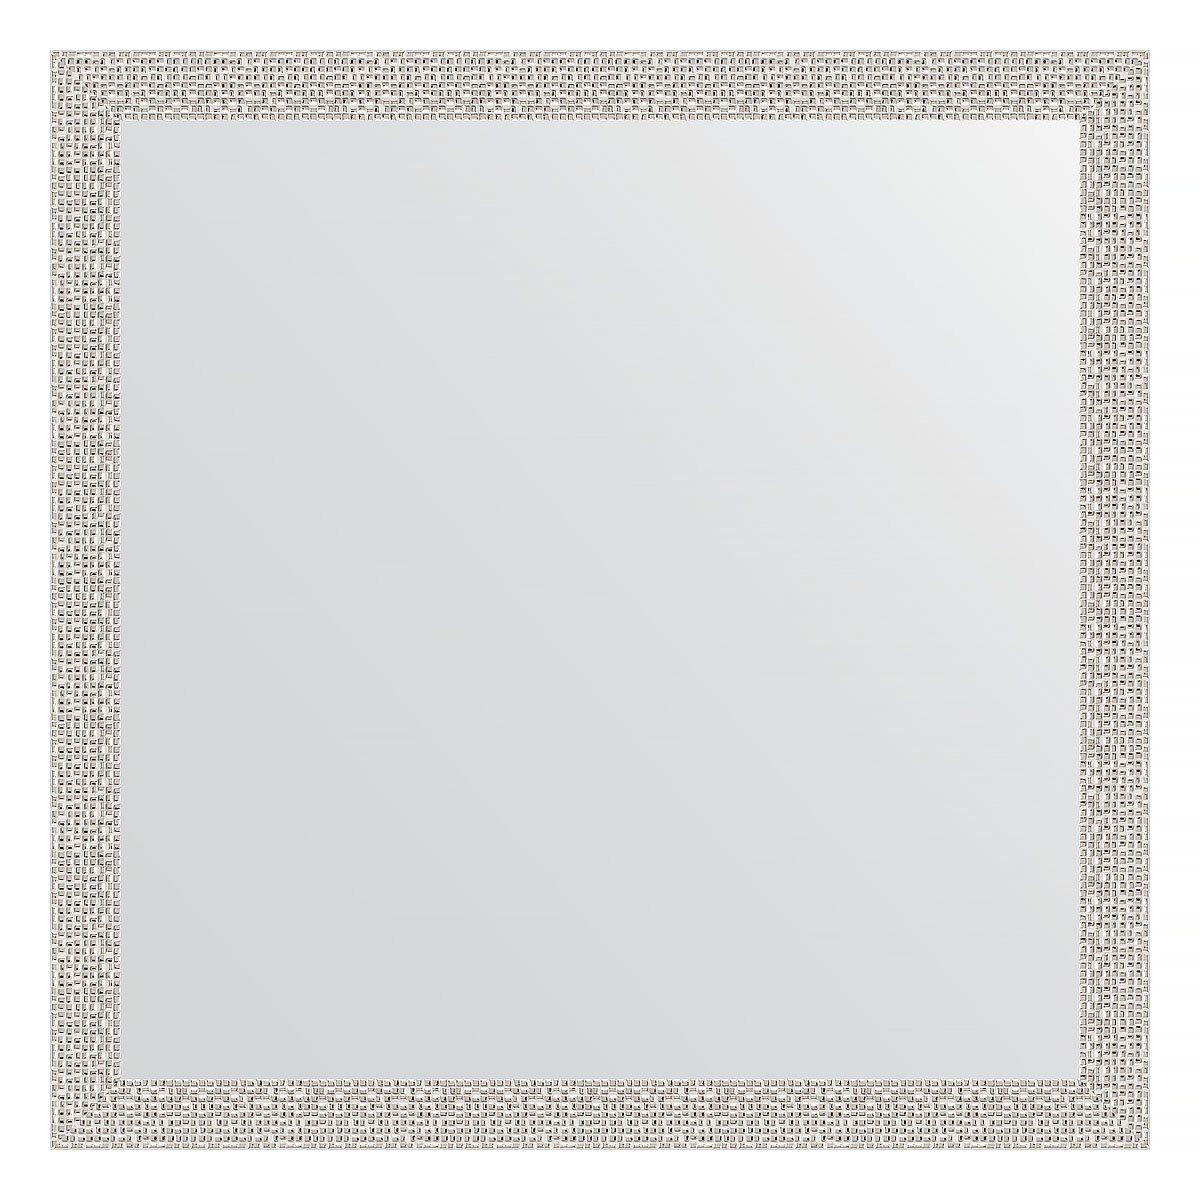 Зеркало настенное EVOFORM в багетной раме мозаика хром, 71х71 см, для гостиной, прихожей, кабинета, спальни и ванной комнаты, BY 3228